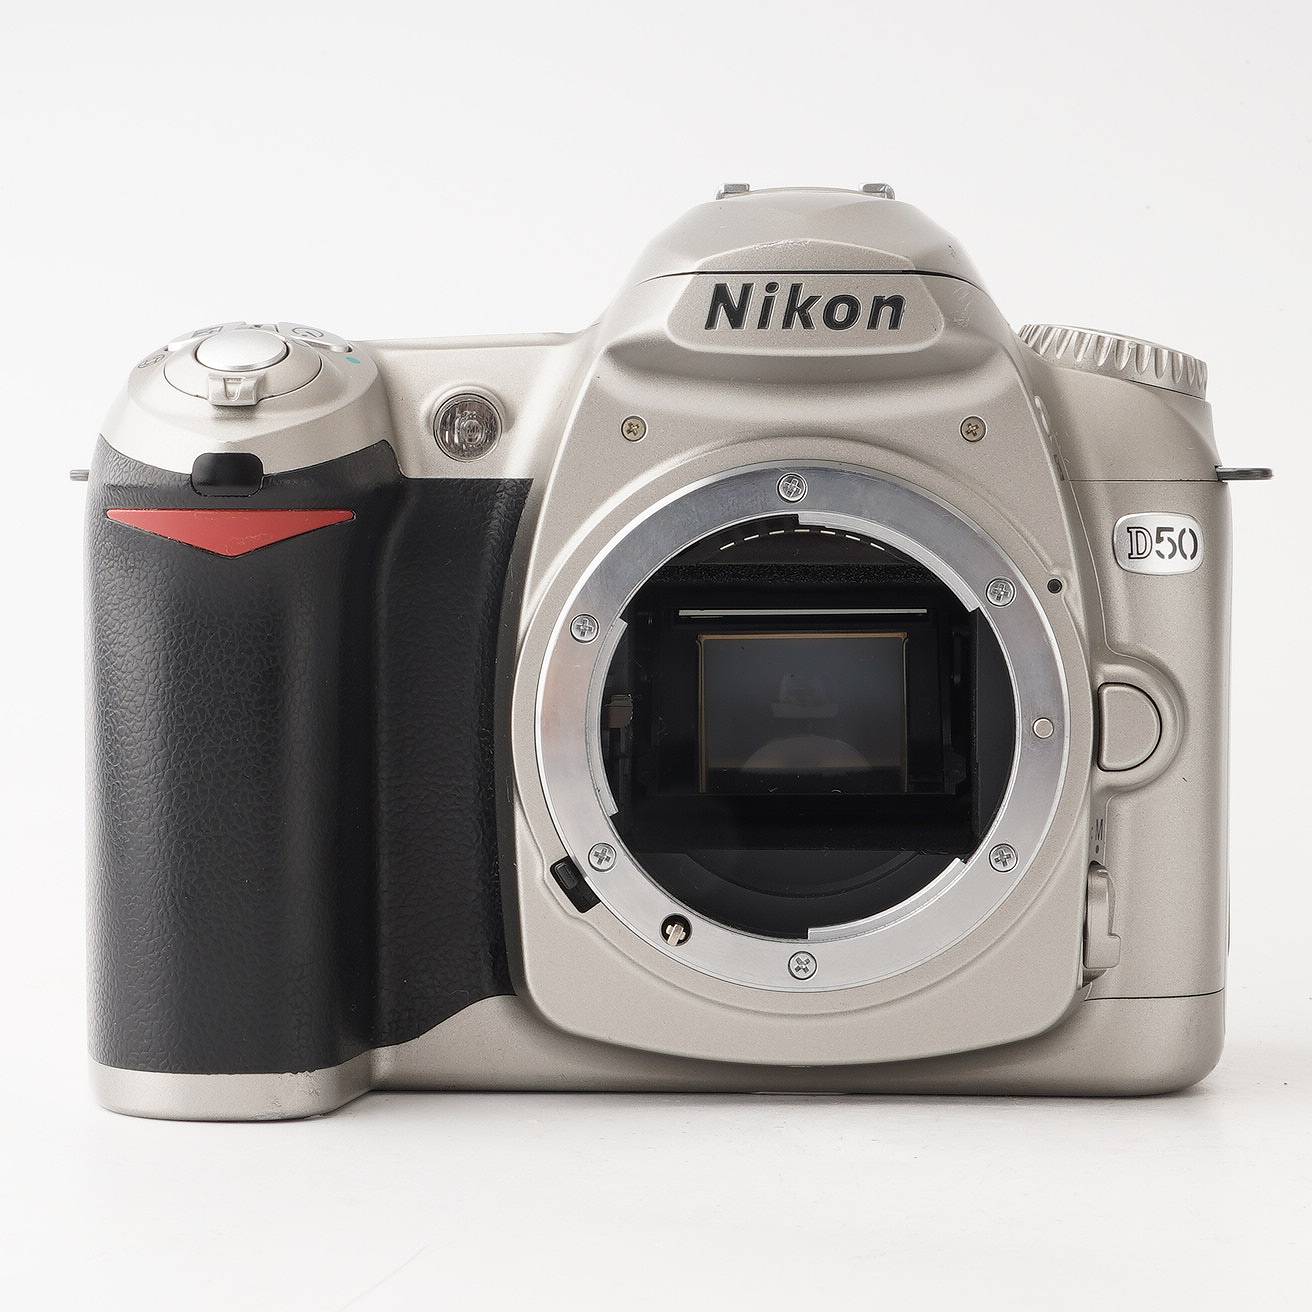 ニコン Nikon D50 デジタル一眼レフカメラ – Natural Camera ...